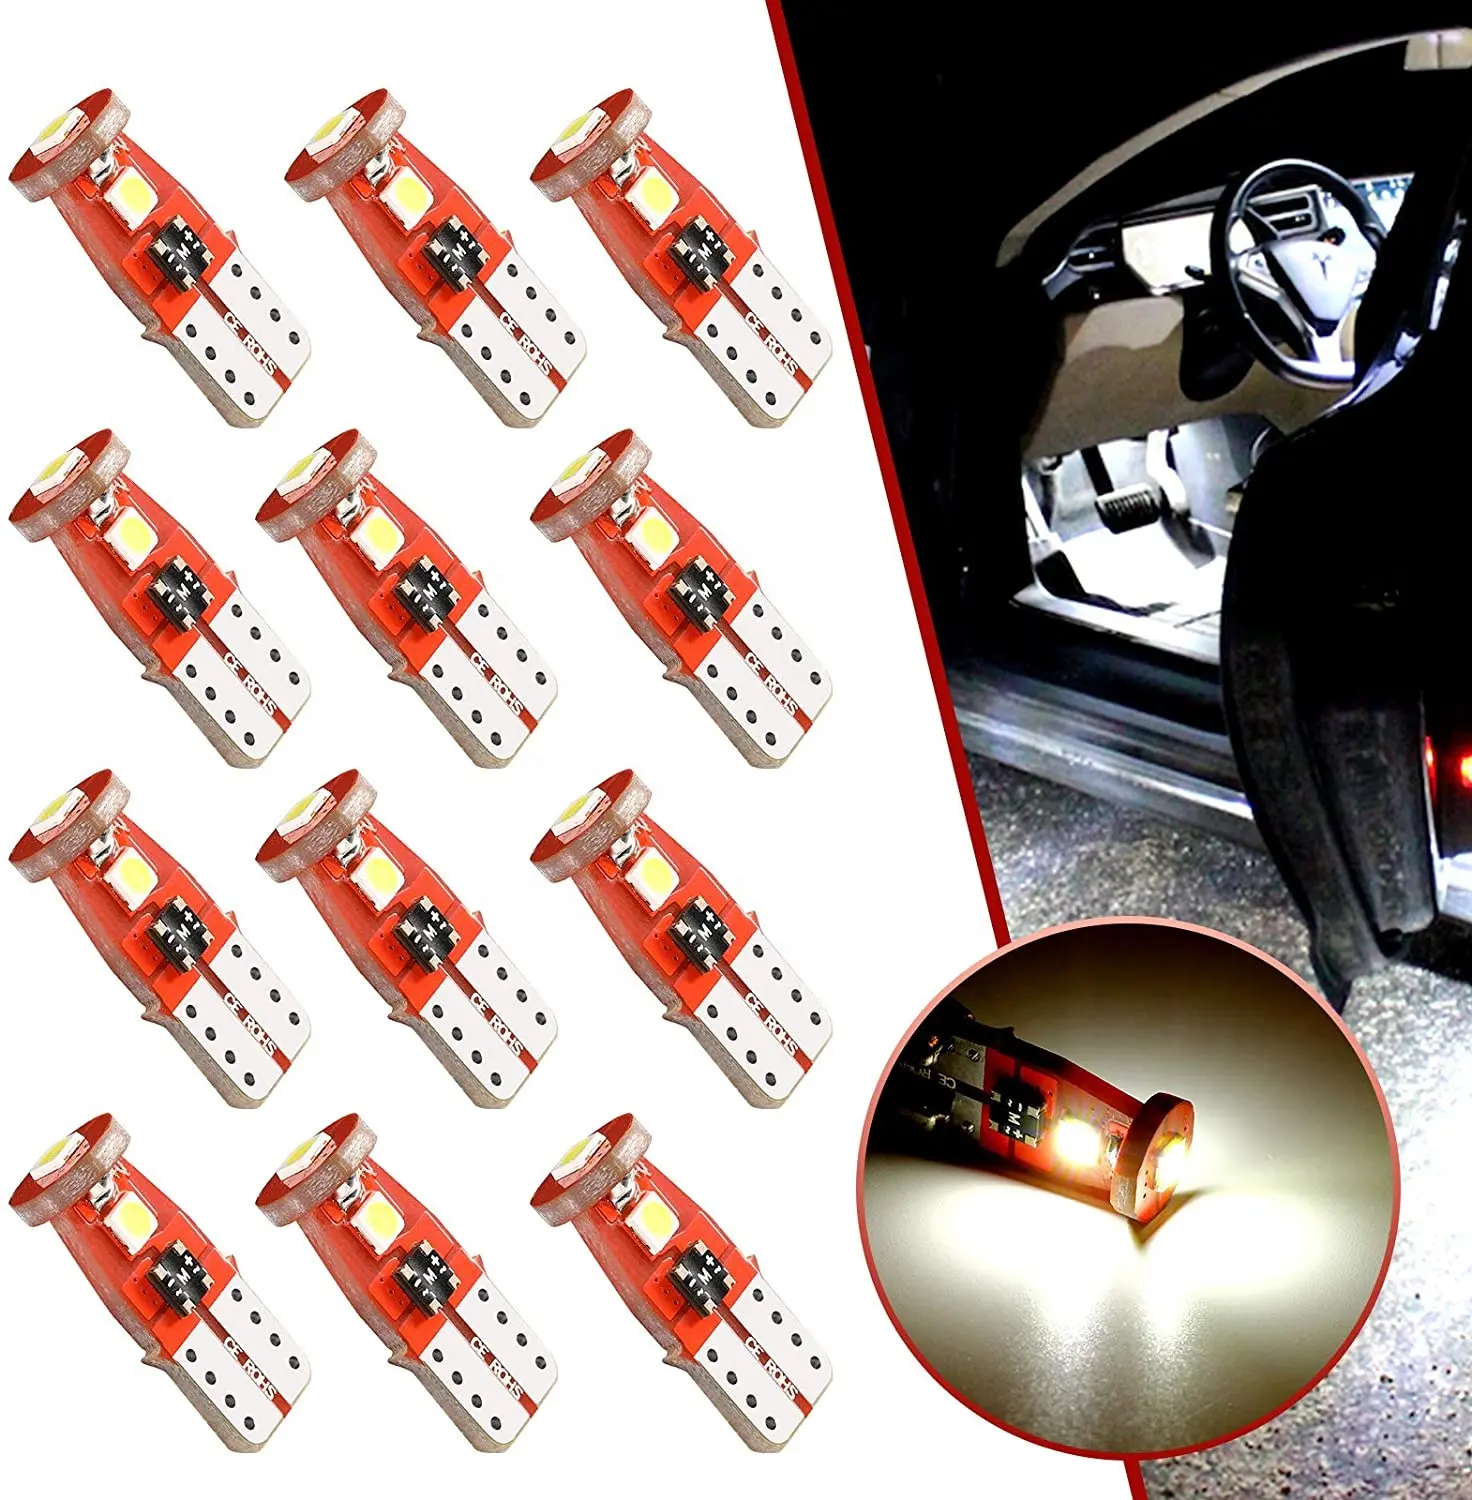 Xenon 194 Led ampul beyaz LED araç İç işık değiştirme T10 ampuller hata ücretsiz araba kubbe nezaket plaka işık